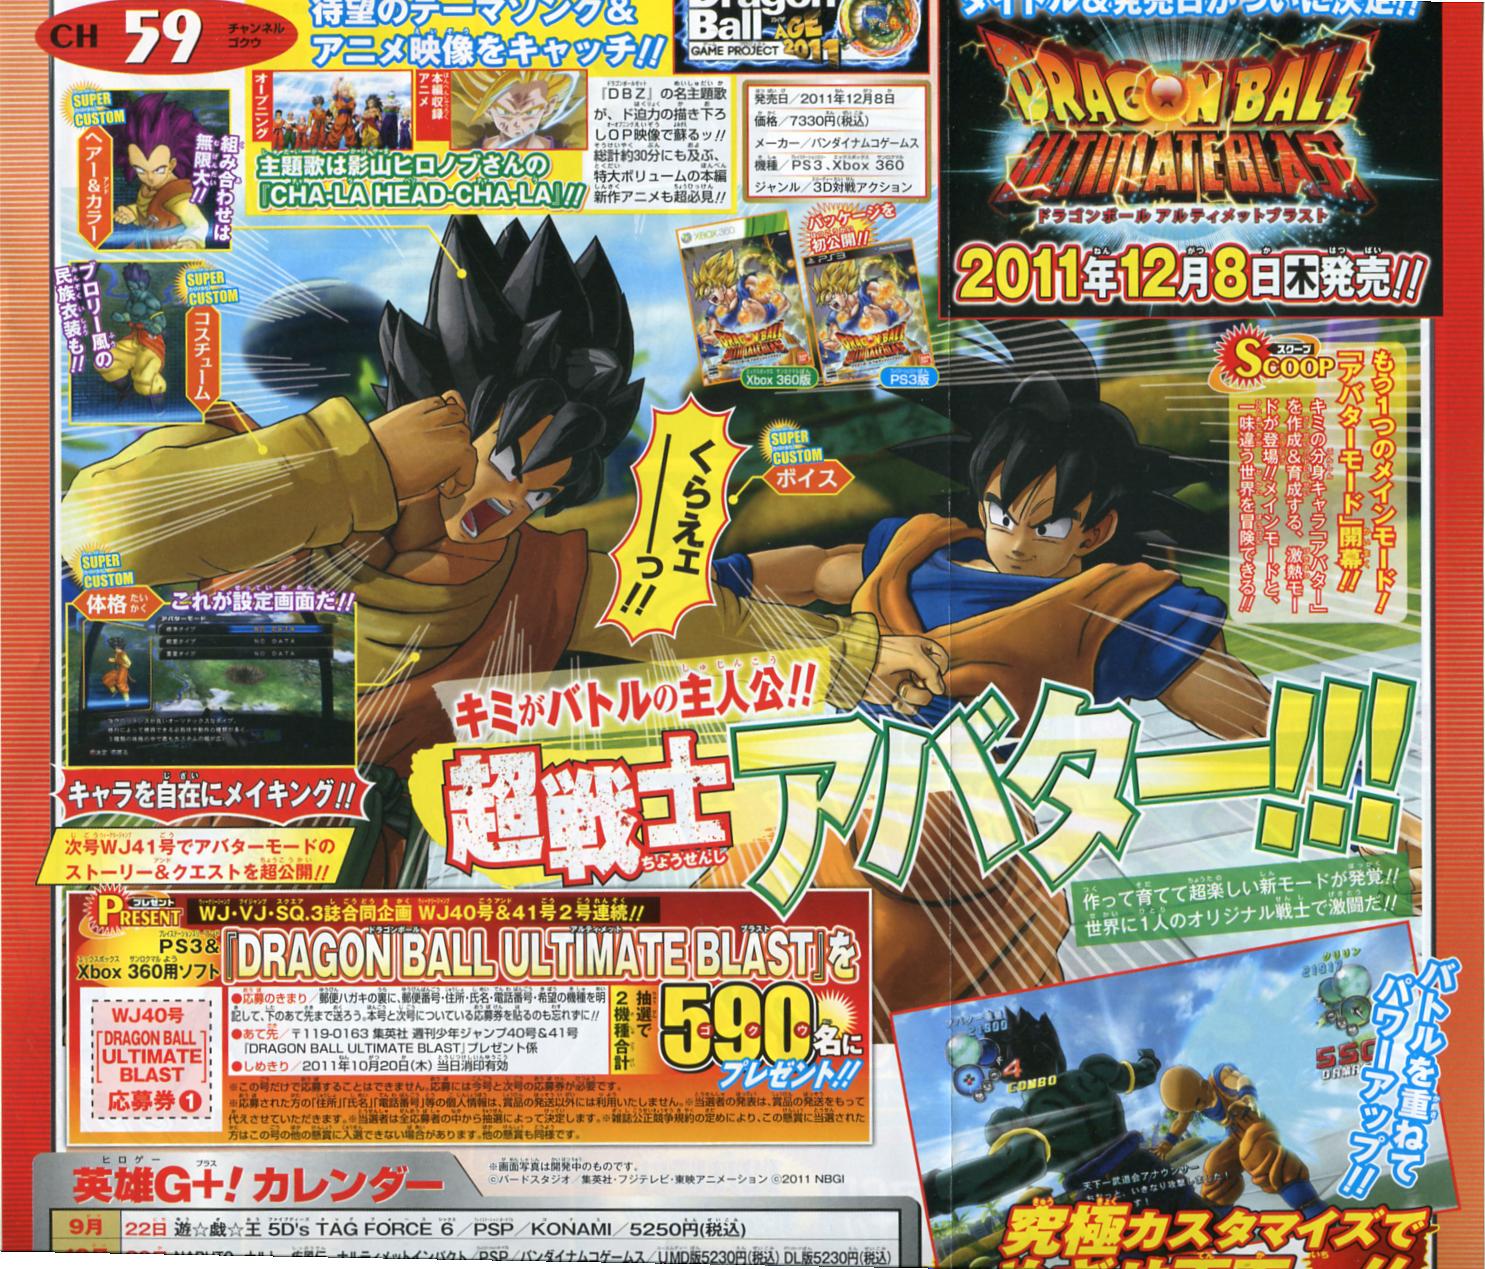 New Dragon Ball Z: Budokai Tenkaichi Game Announced - MP1st